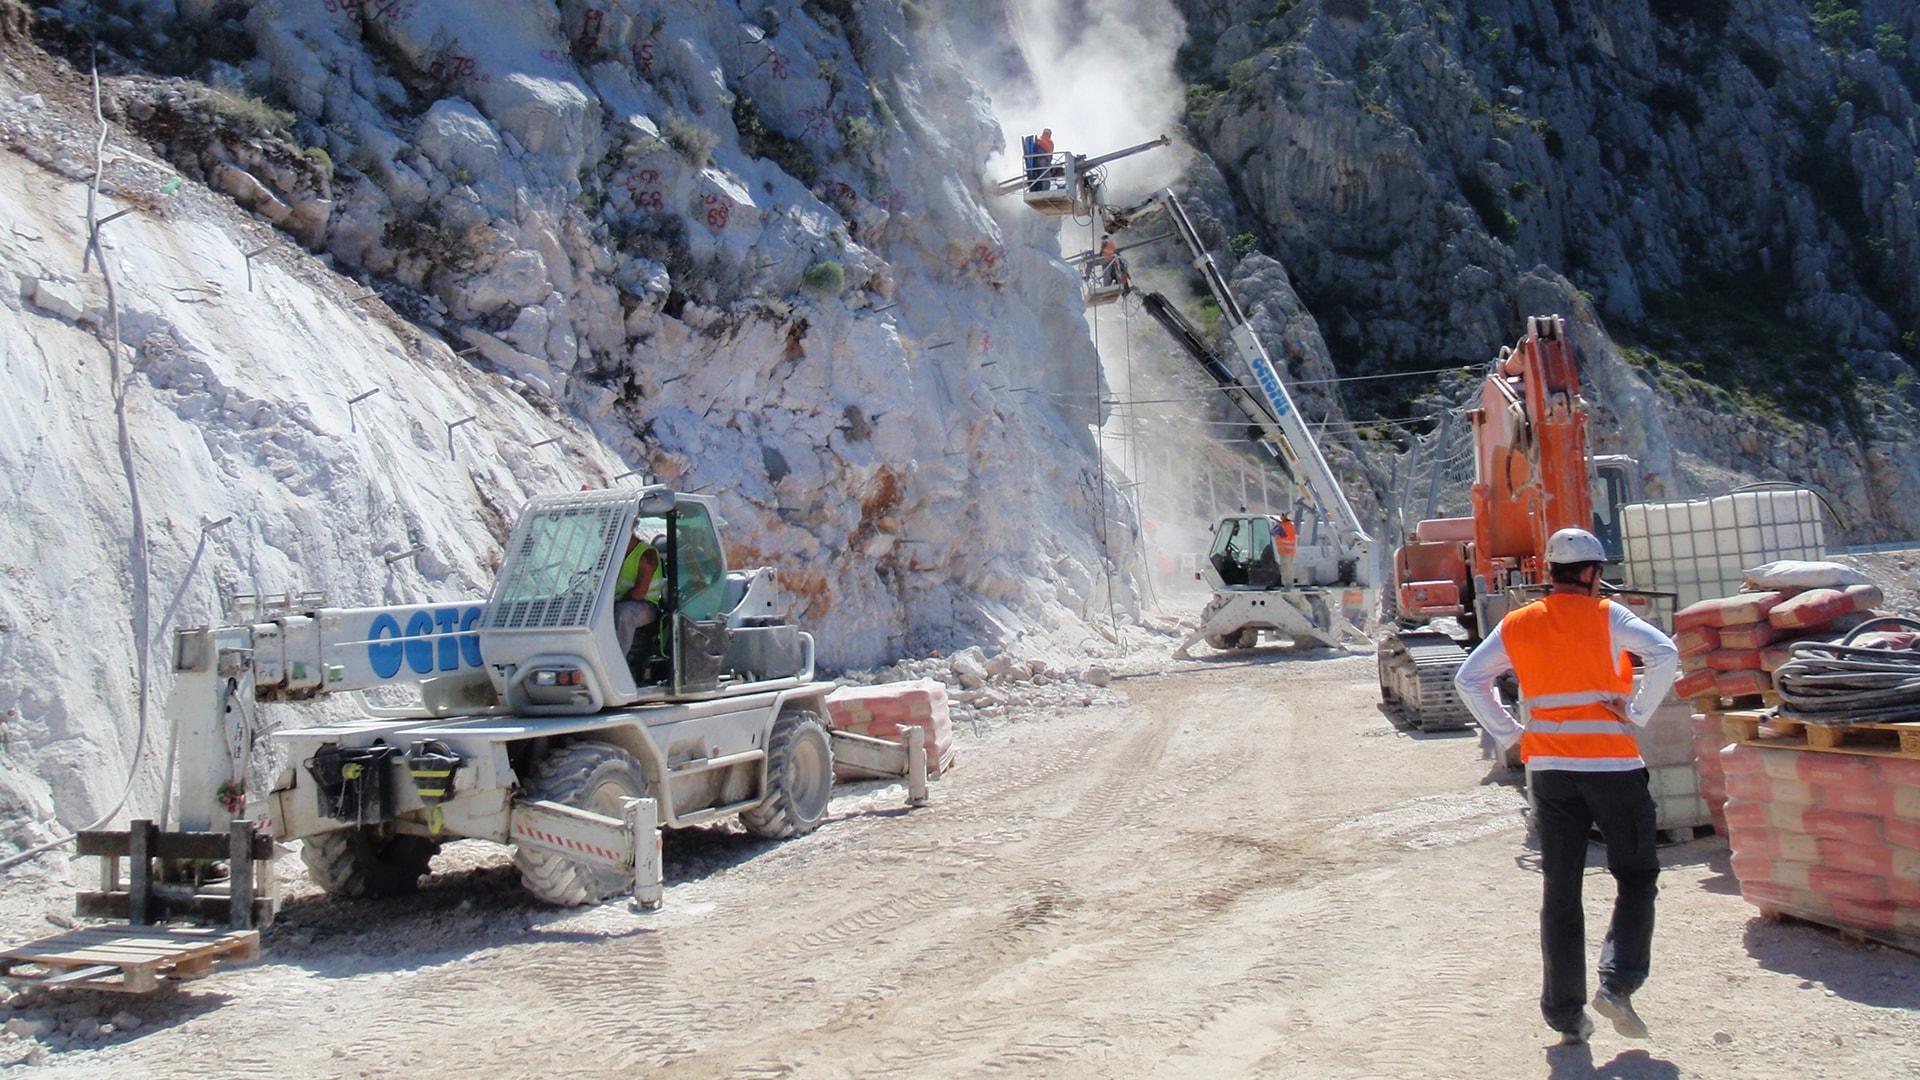 Izvođenje dijela radova na sanaciji dijela ceste uzrokovane odronom na državnoj cesti D 512, Makarska-Ravča (Predio Stupica) - 6